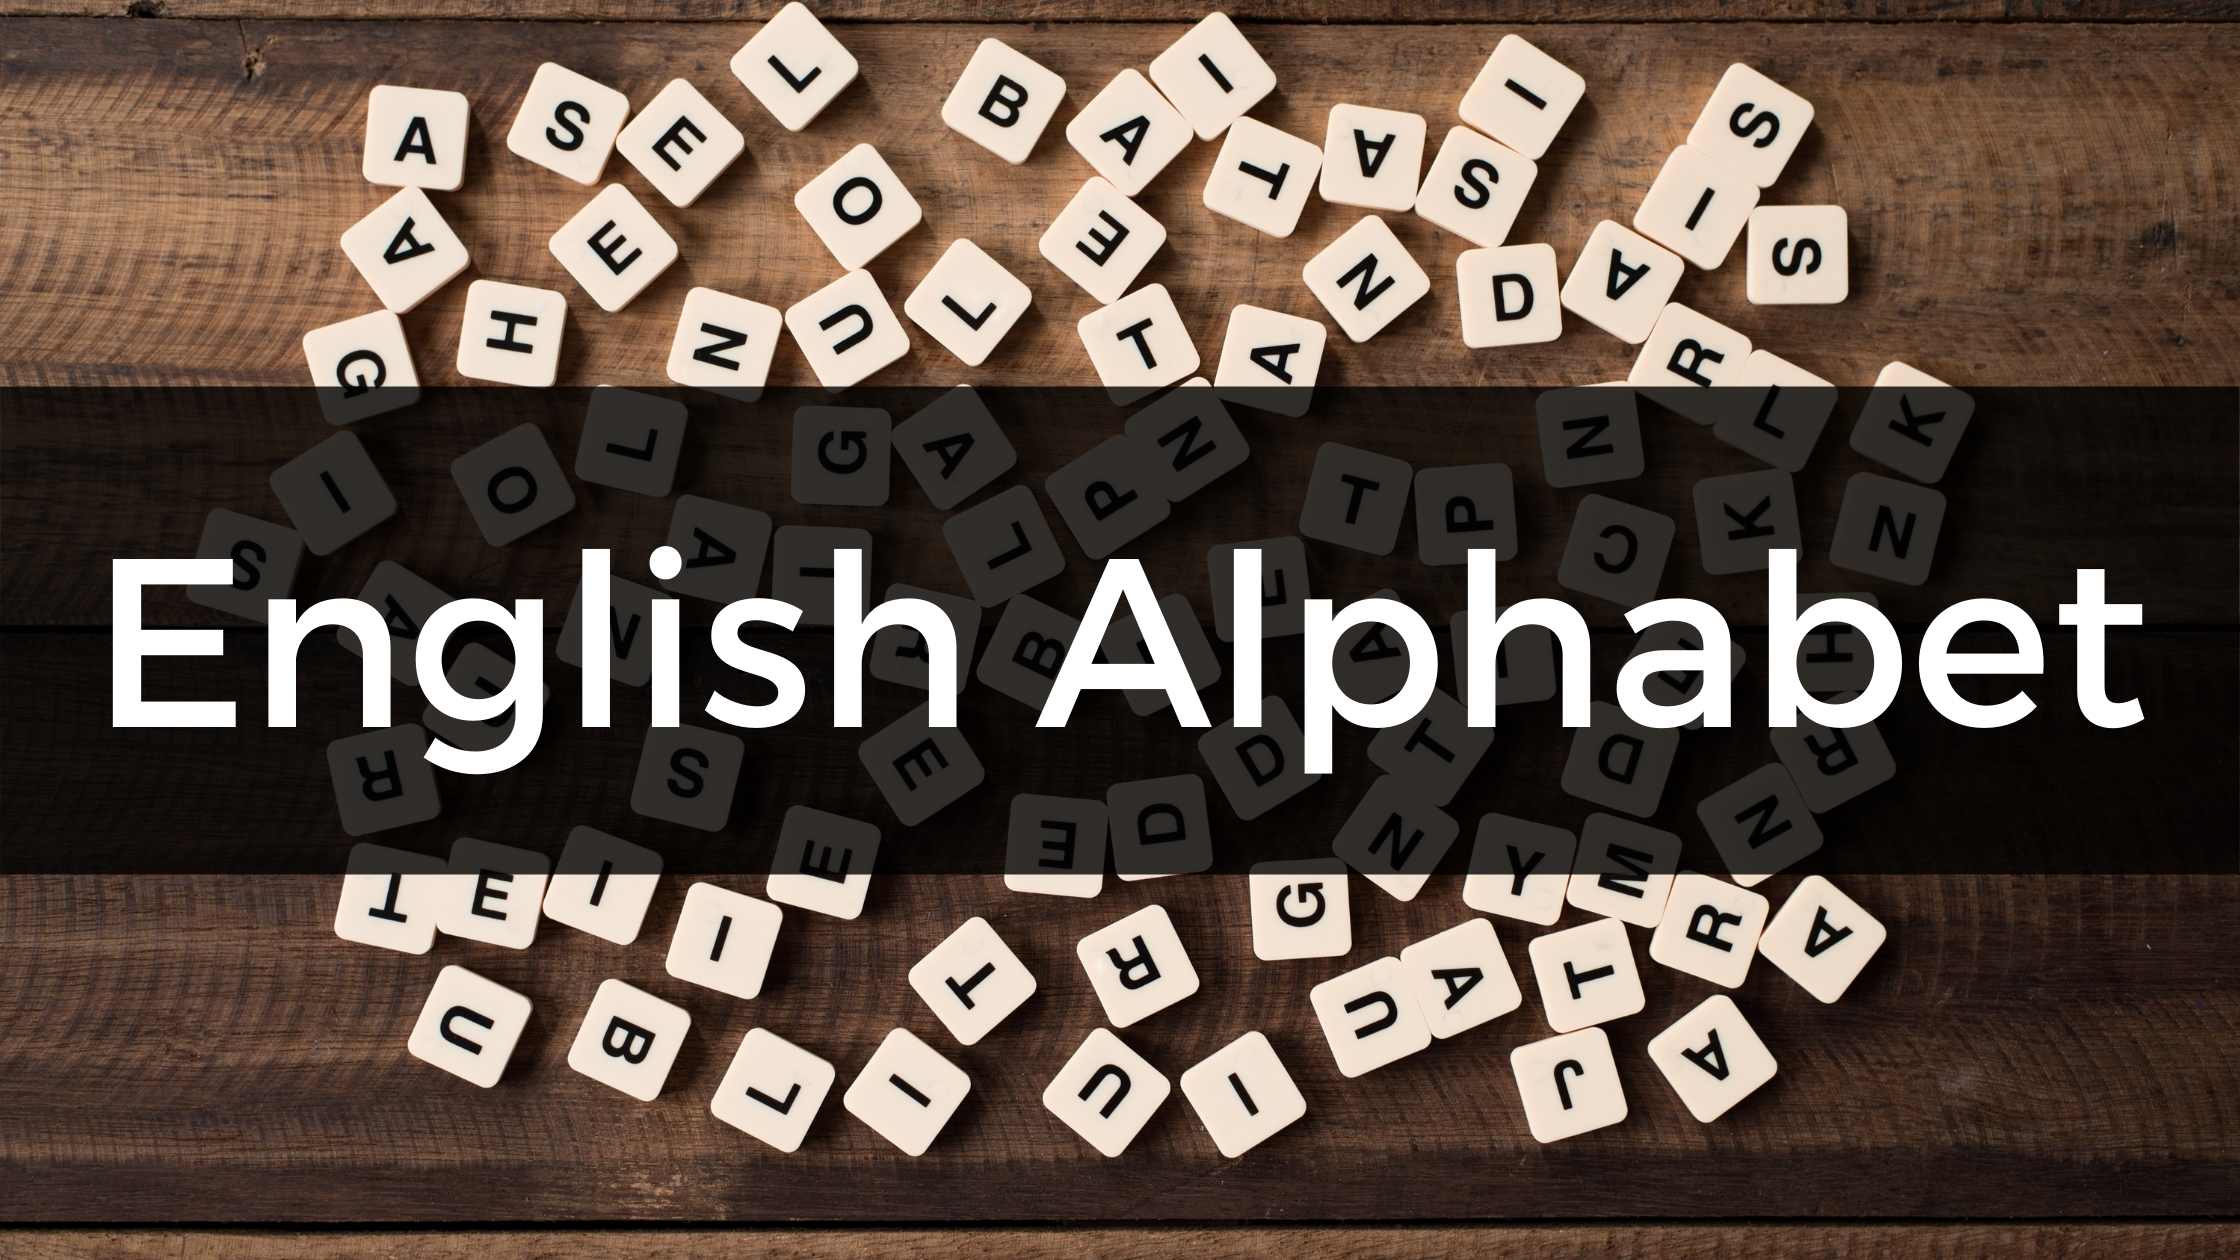 aprender el alfabeto ingles juegos online ejercicios letras gratis